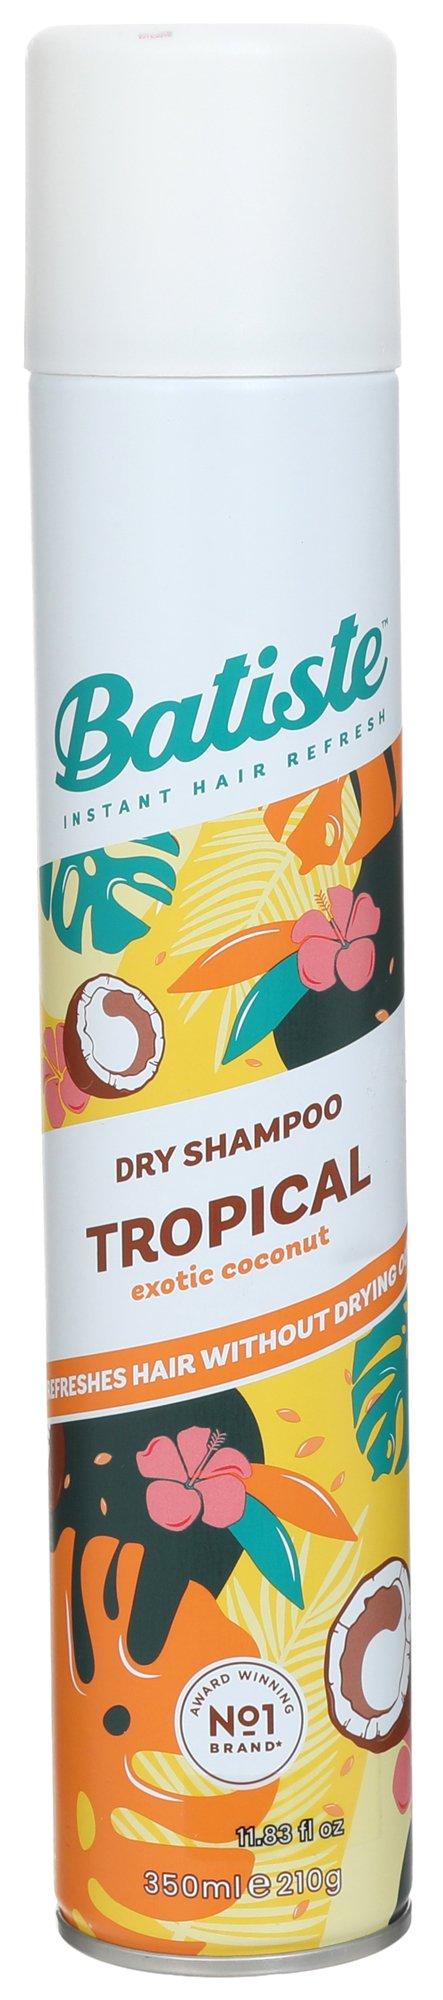 11.8 oz Tropical Scented Dry Shampoo